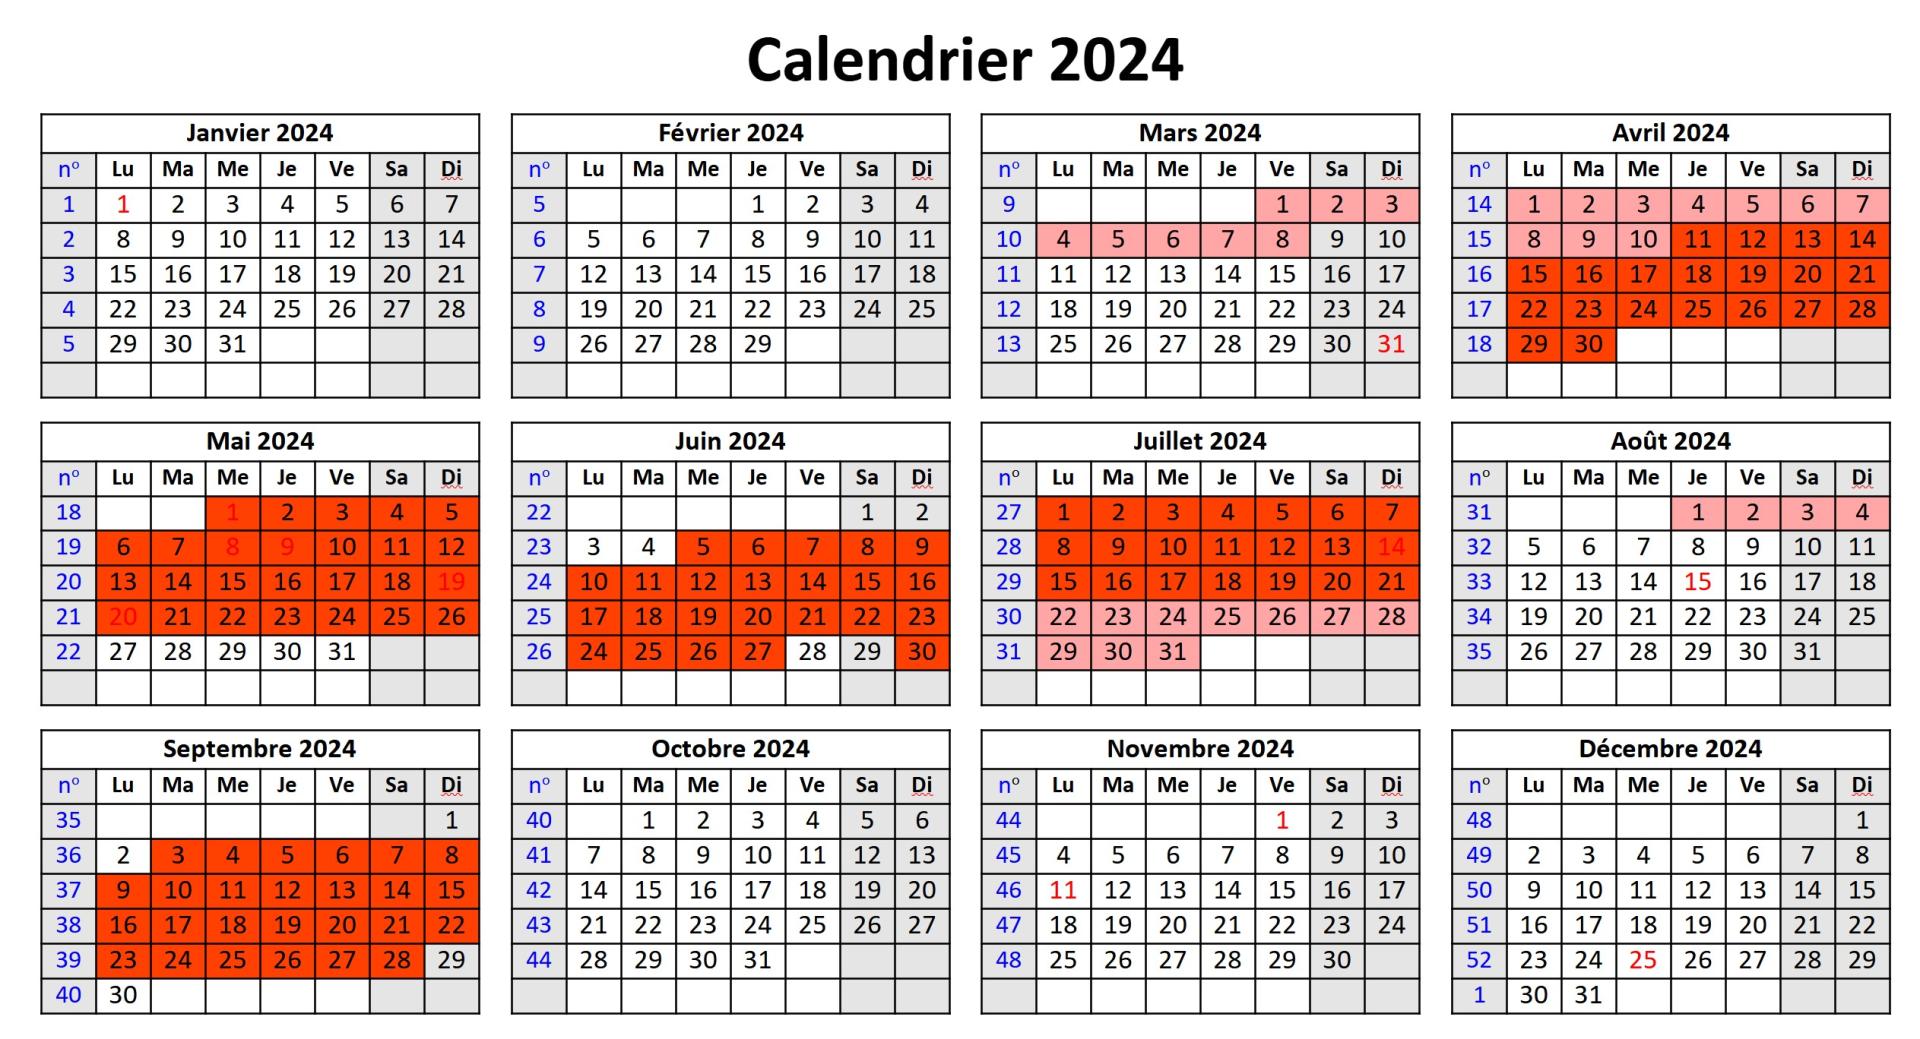 Calendrier 2024 v5